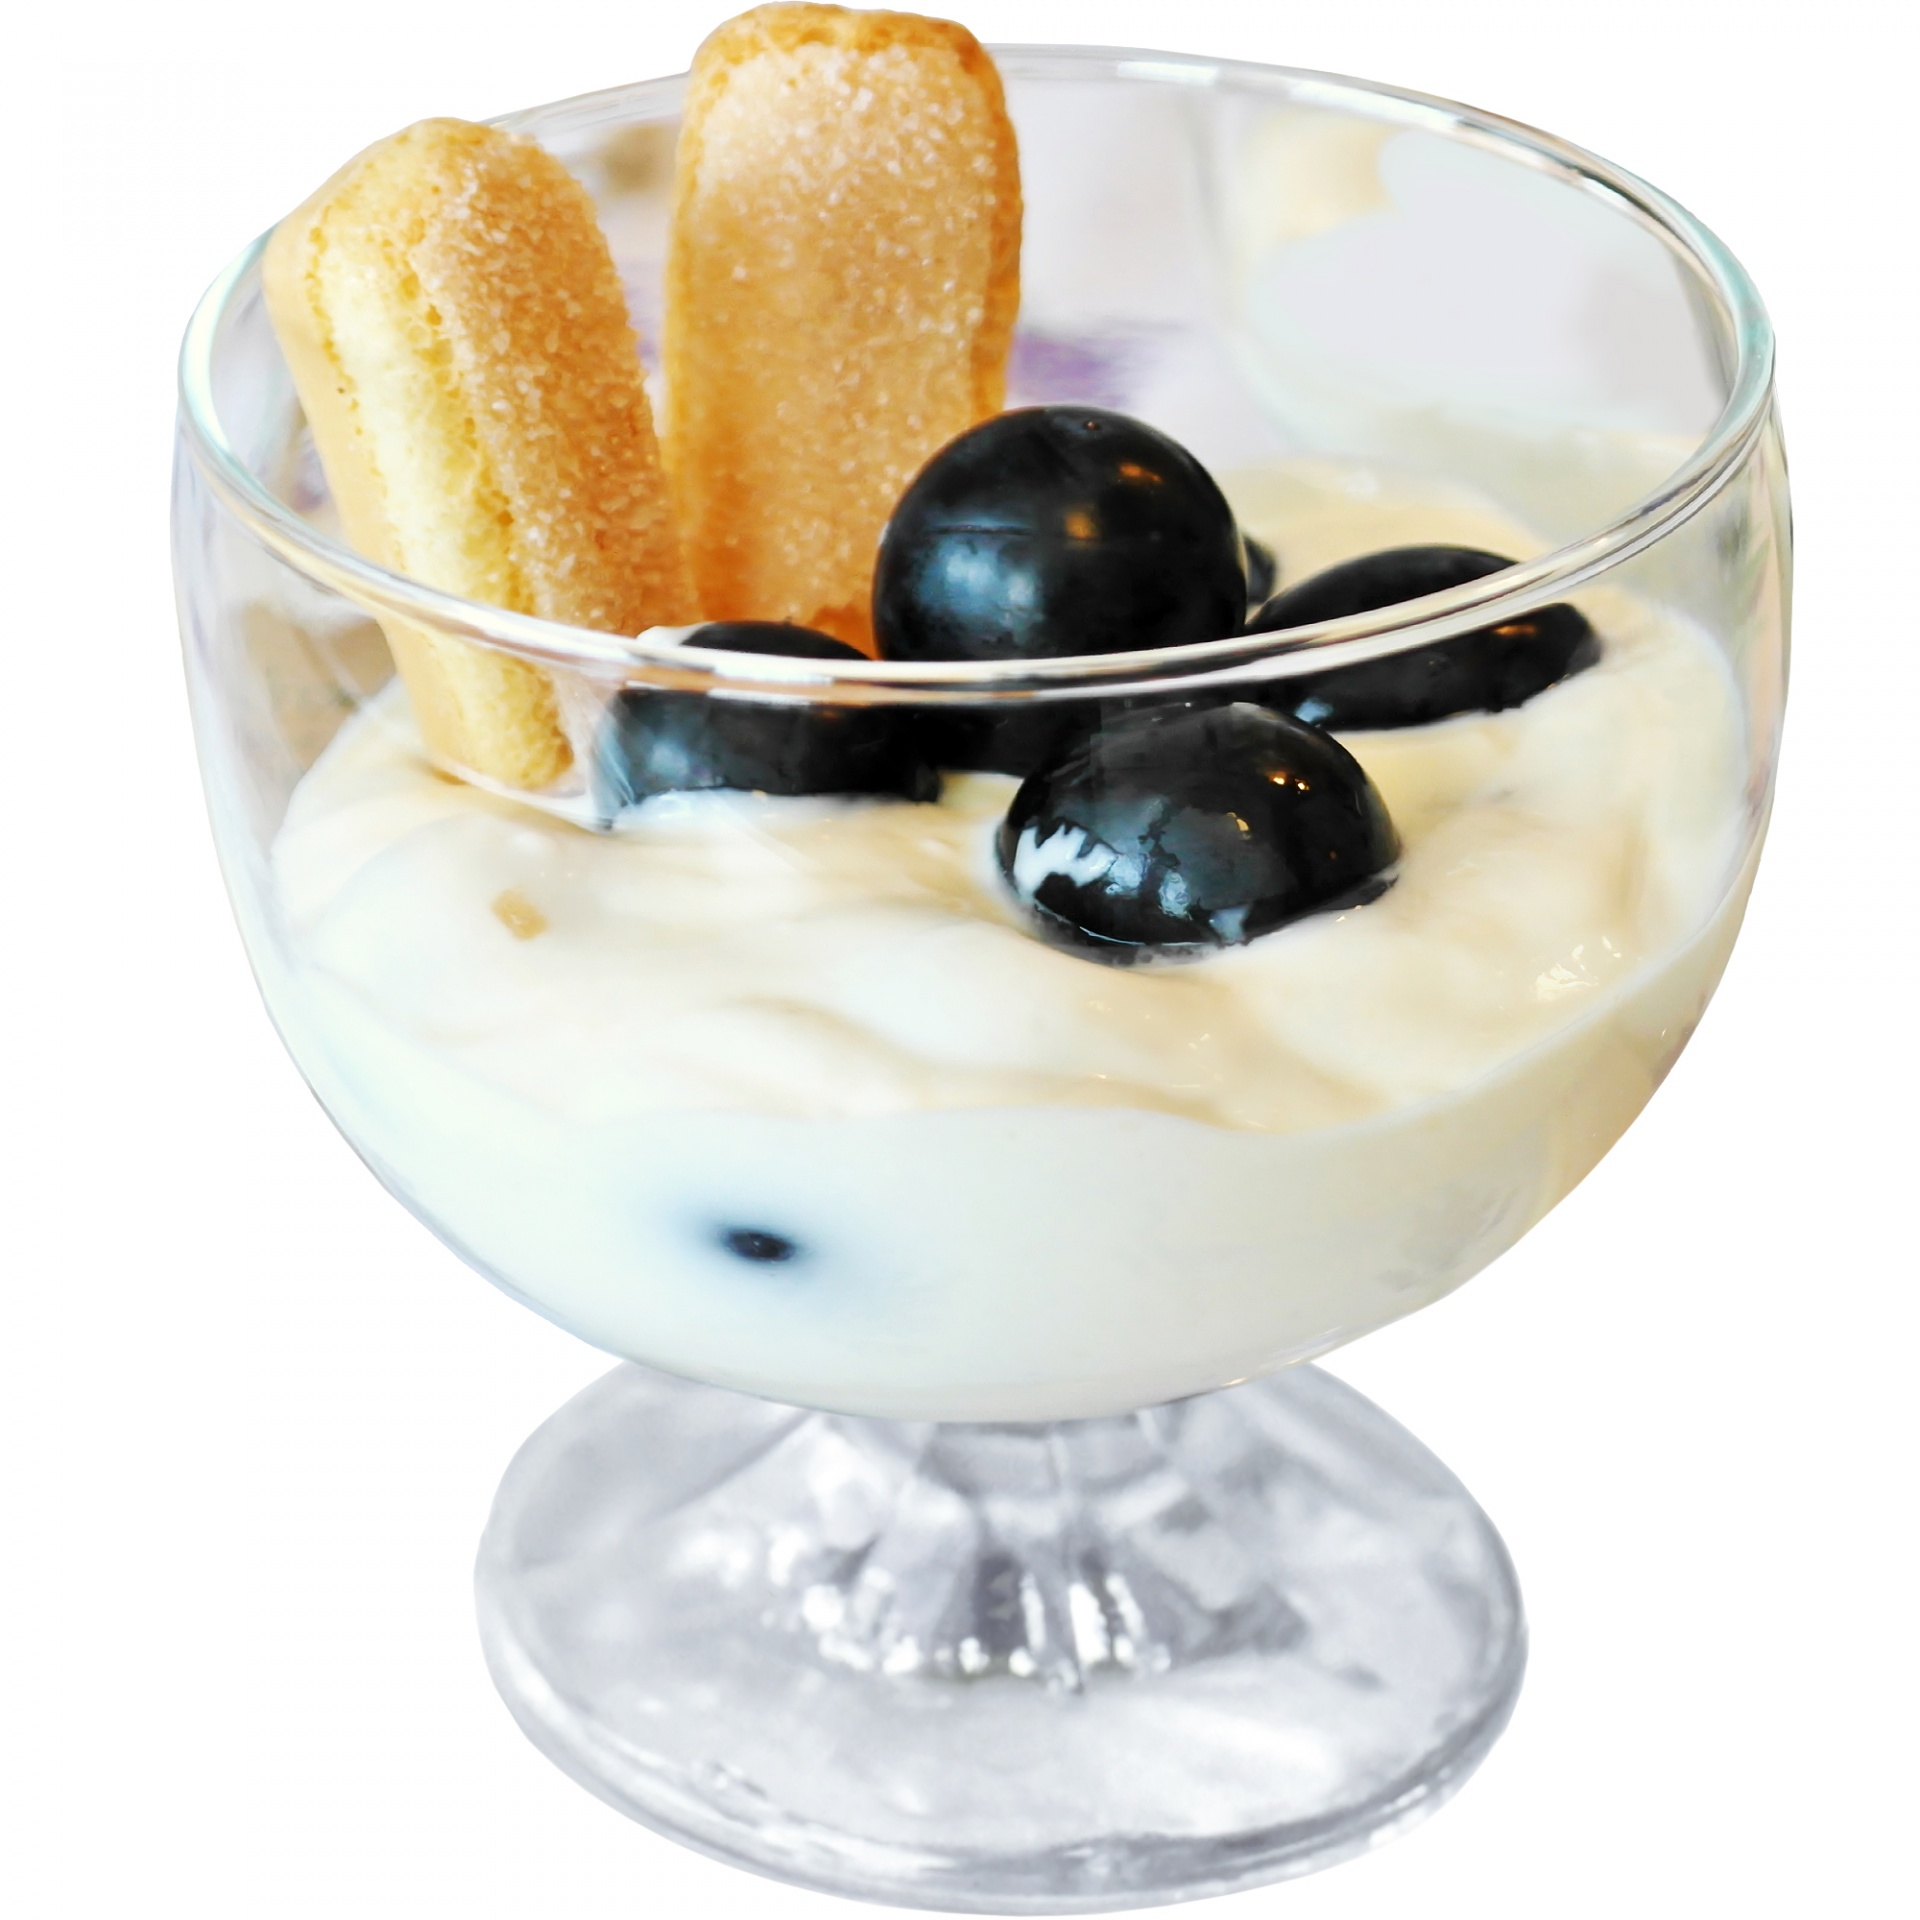 dessert yogurt whipped cream free photo